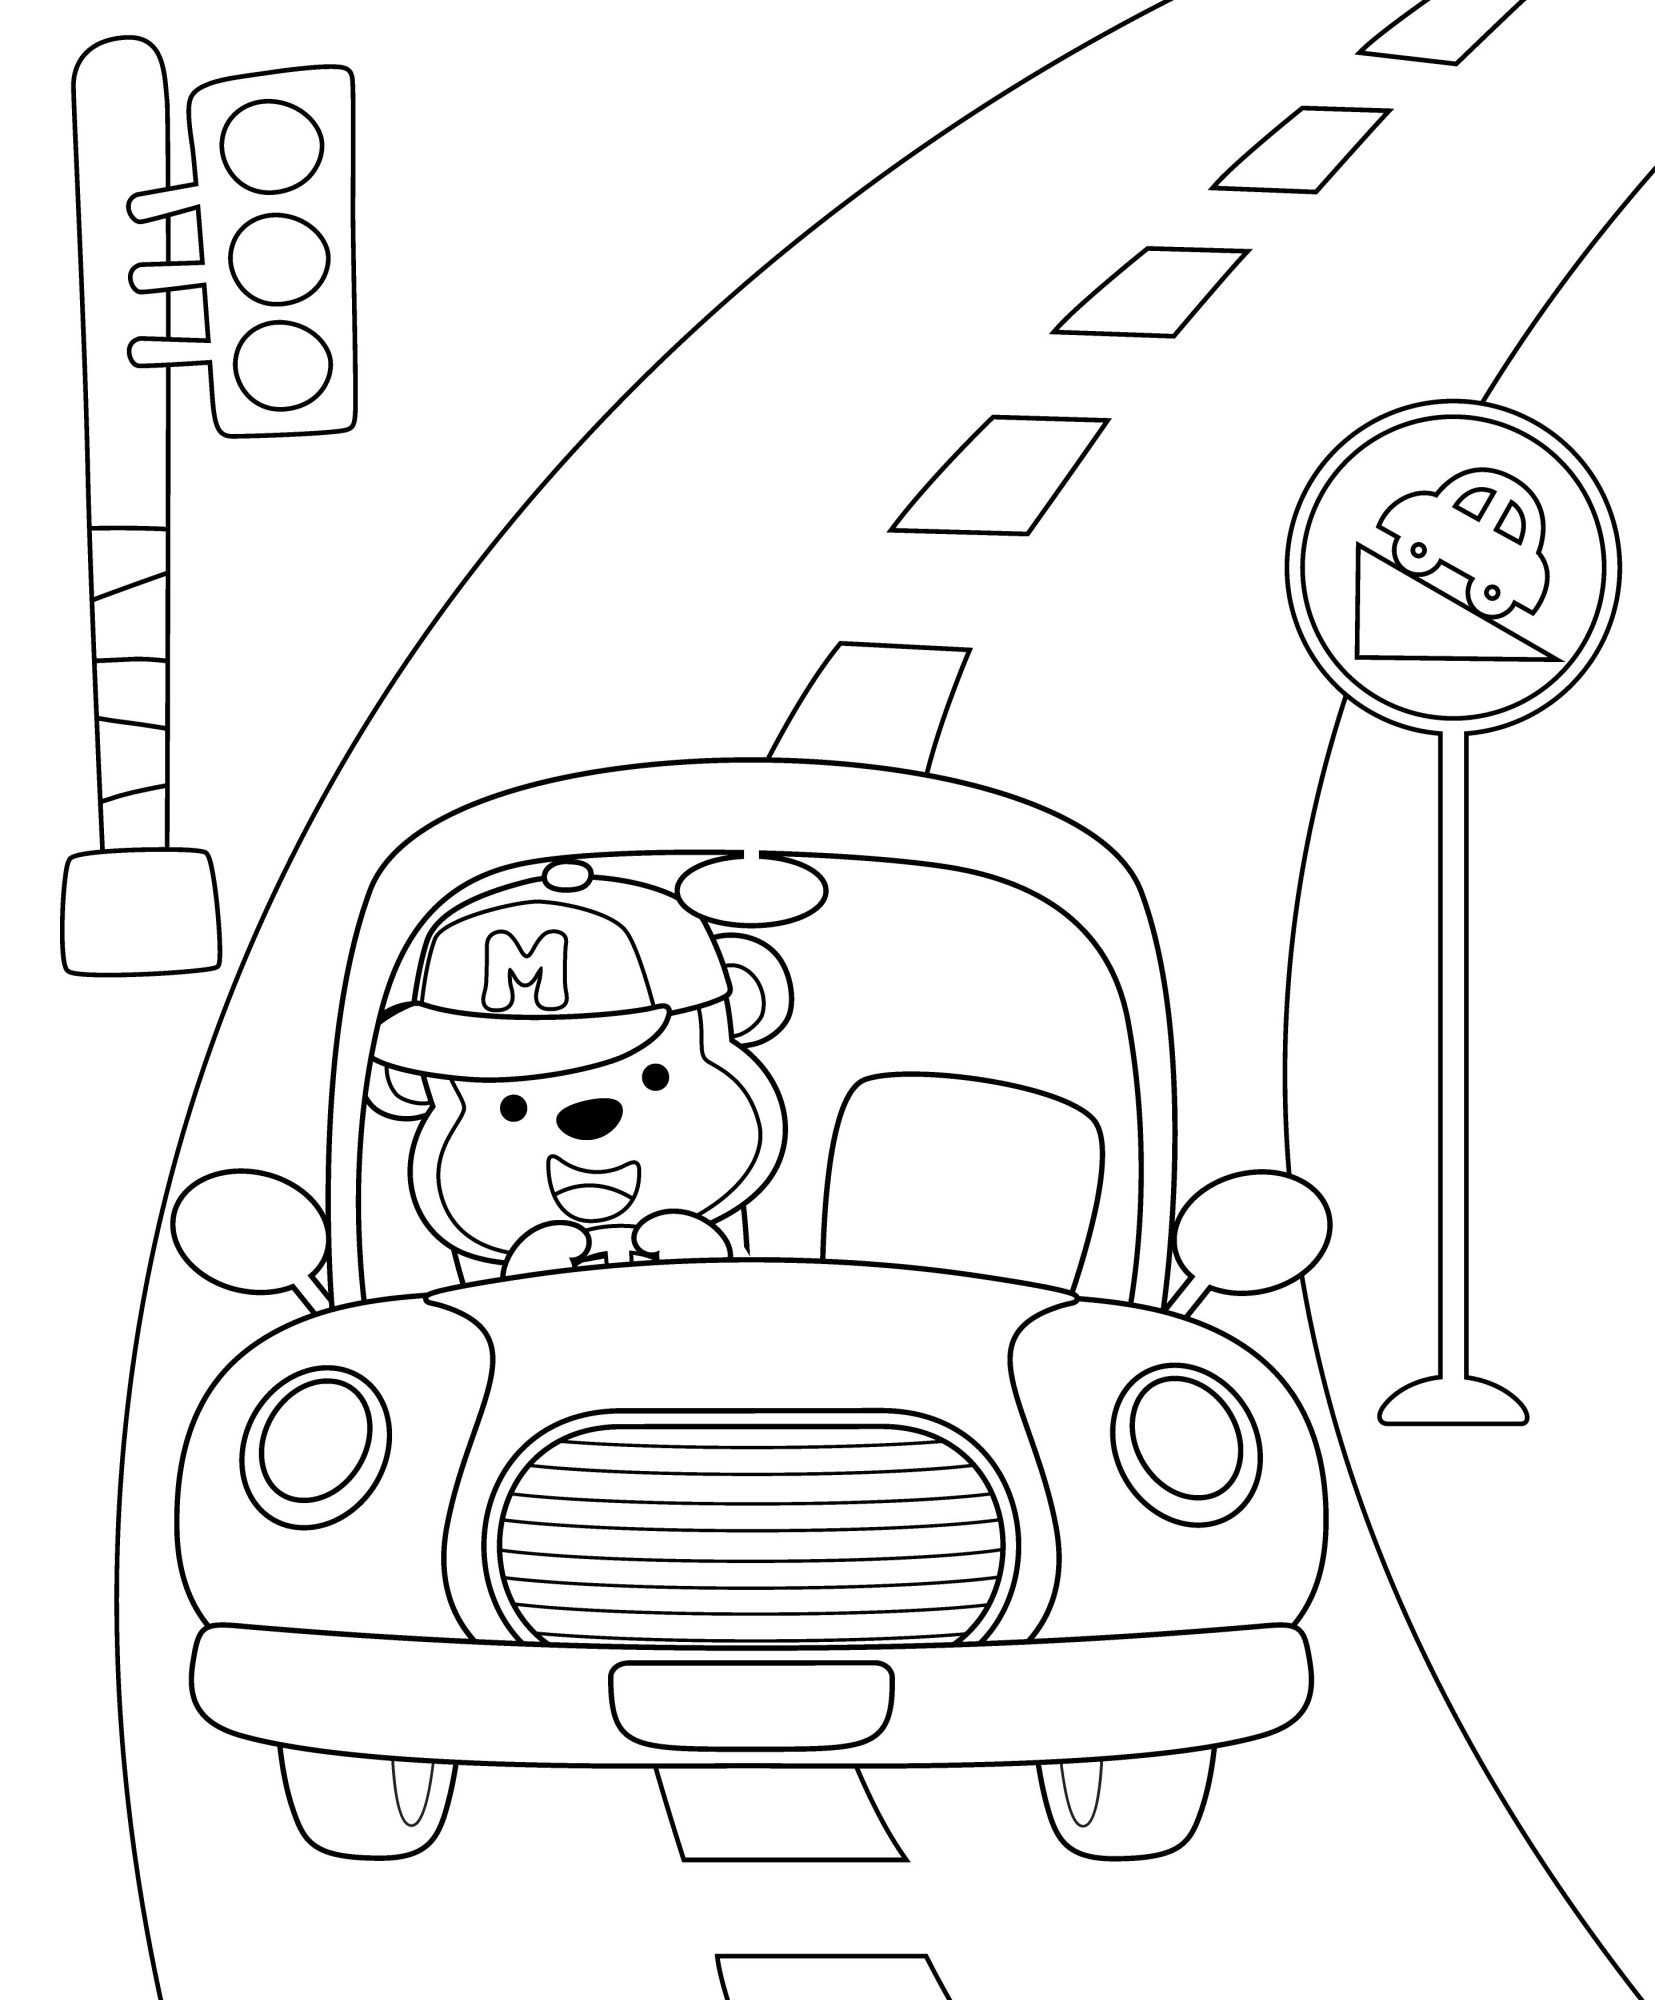 Раскраска для детей: мишка едет по дороге за рулем такси